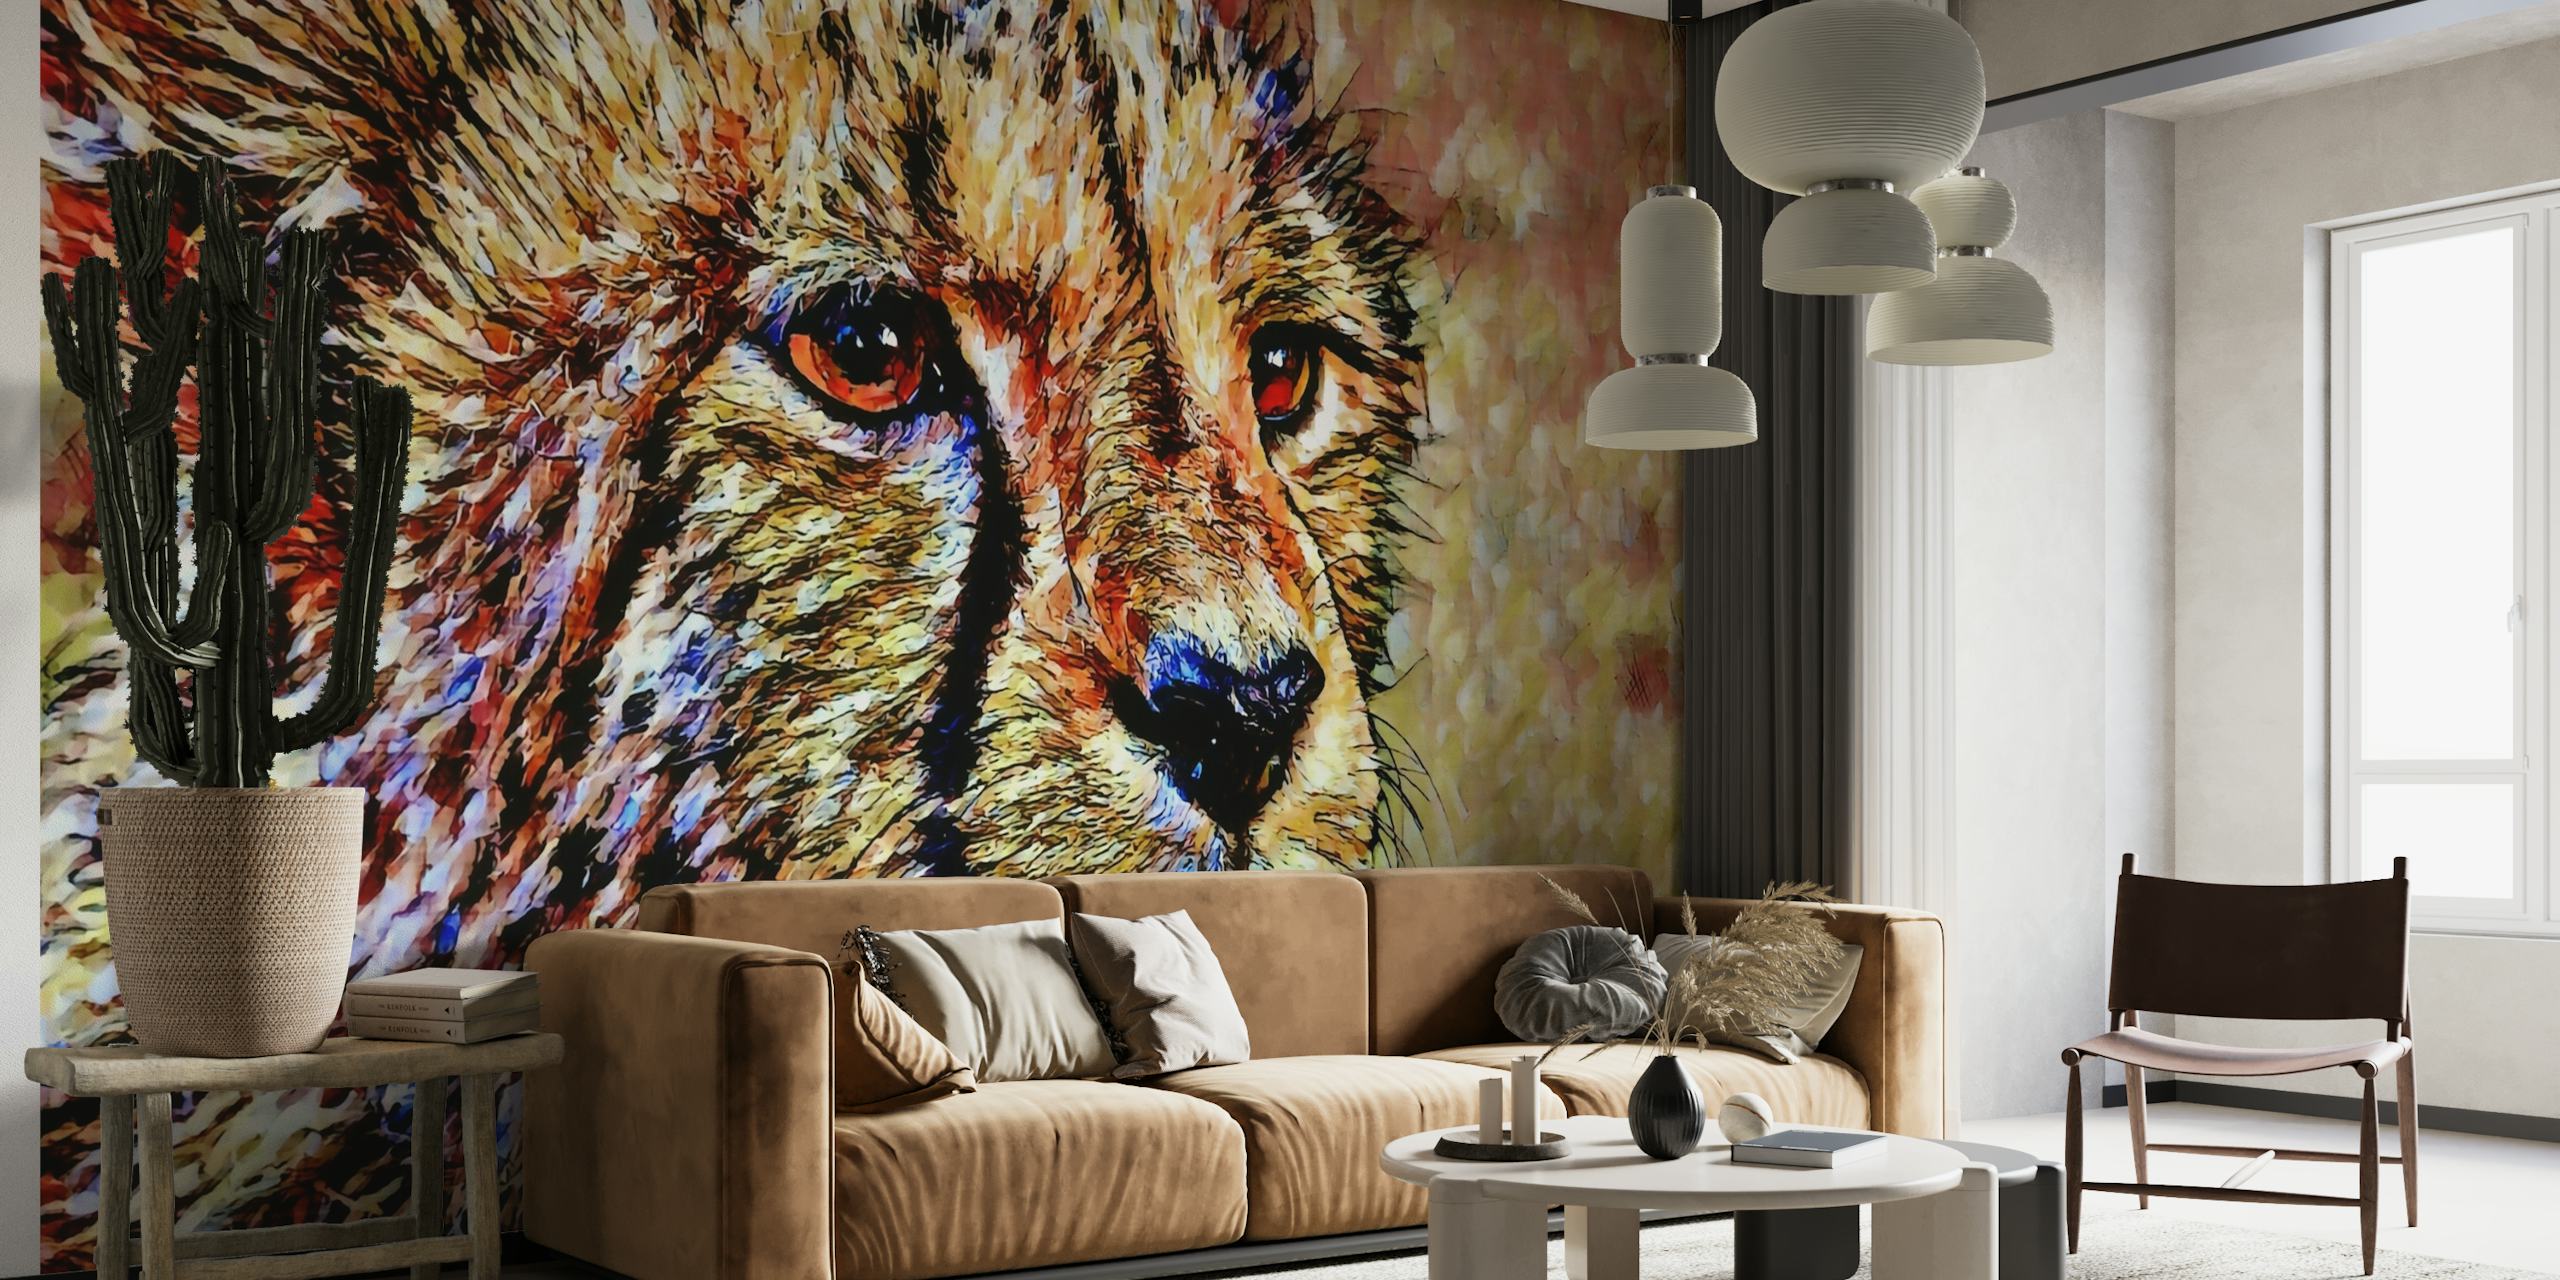 Umjetnička zidna slika s gepardom sa šarenim, teksturiranim potezima kista